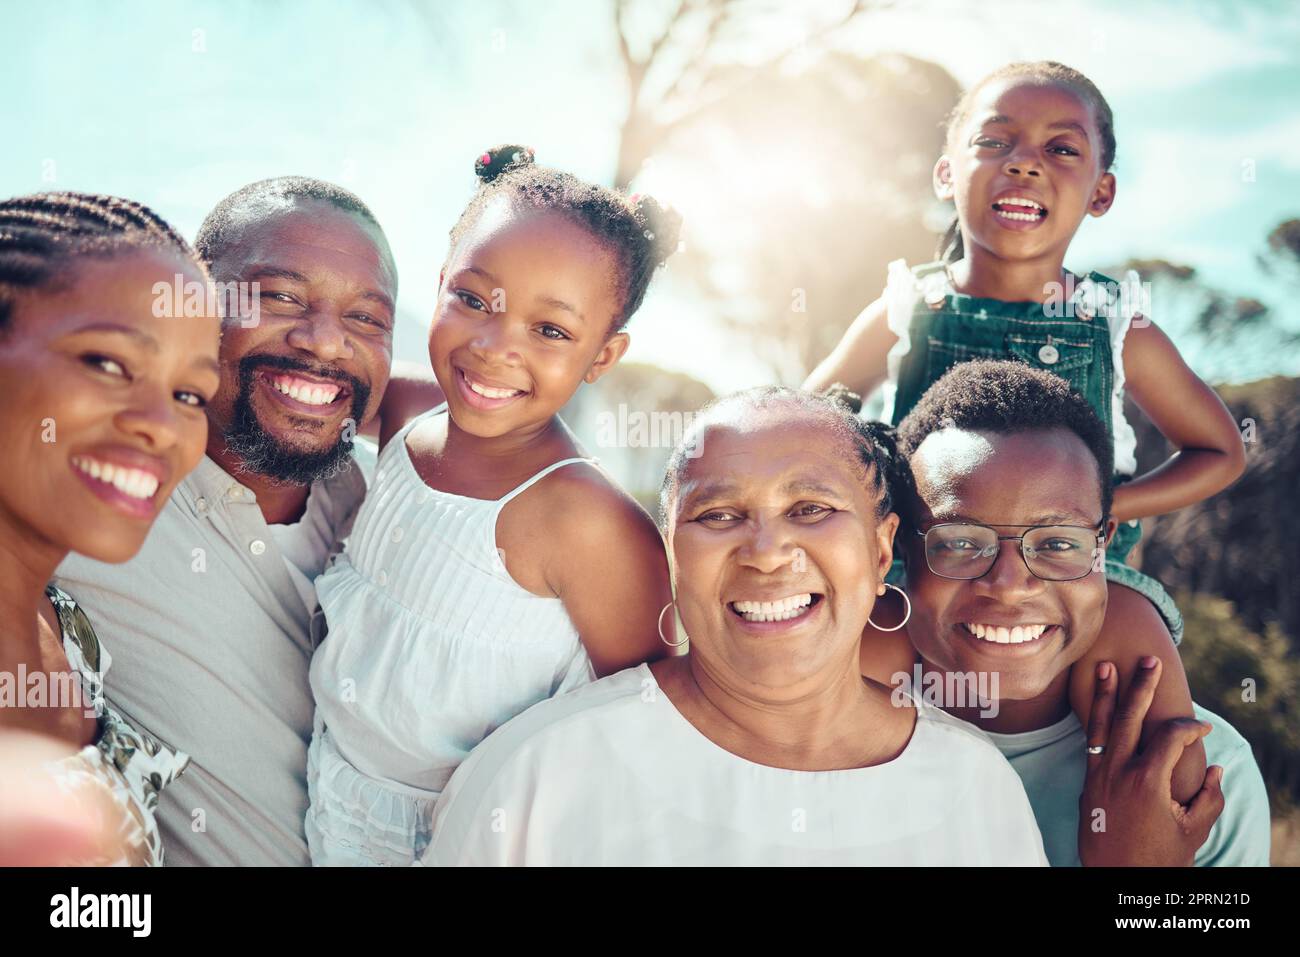 Famille, selfie et amour avec des personnes prenant une photo avec un sourire ensemble en dehors de l'été. Autoportrait d'un groupe heureux d'enfants, de parents et de grands-parents posant pour une photo au soleil Banque D'Images